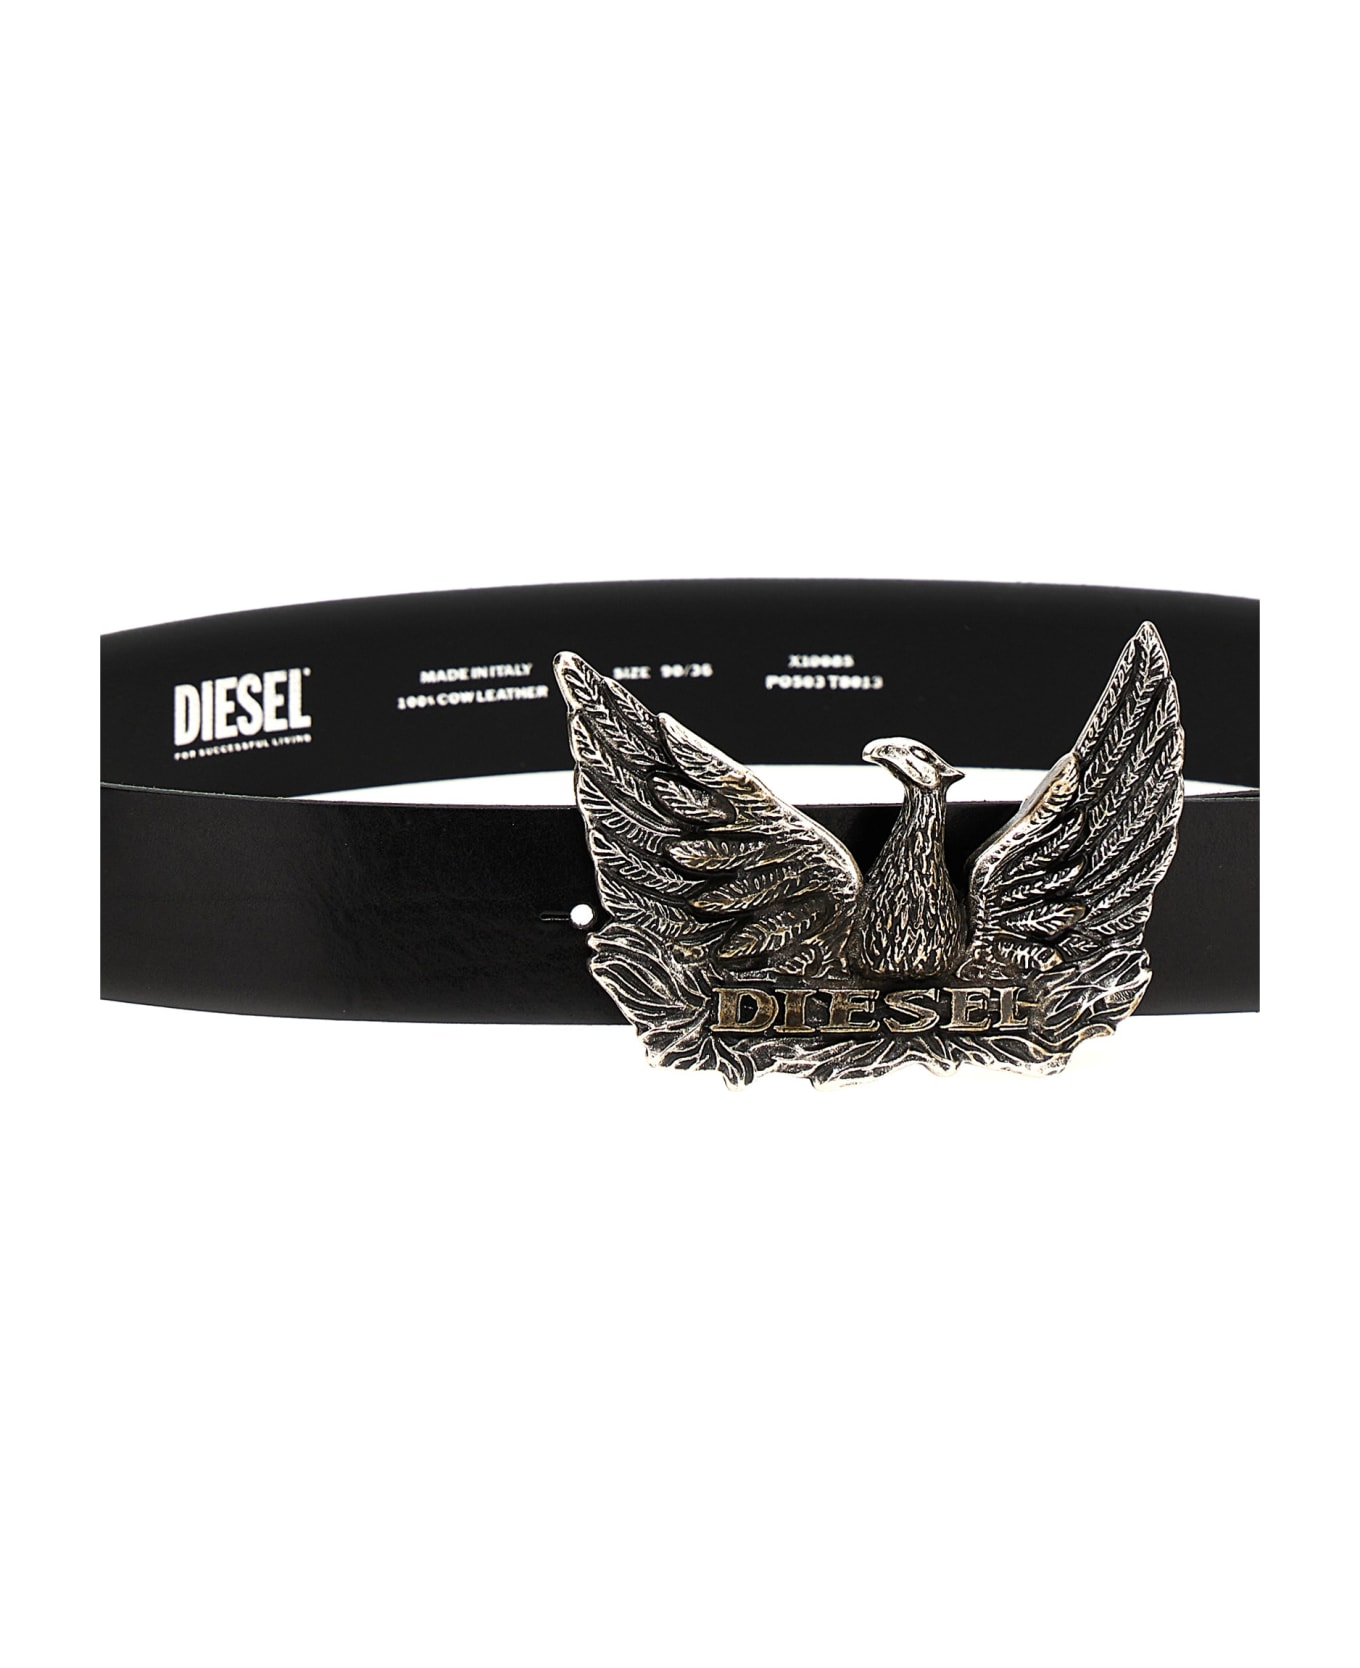 Diesel 'phoenix' Belt - Black  